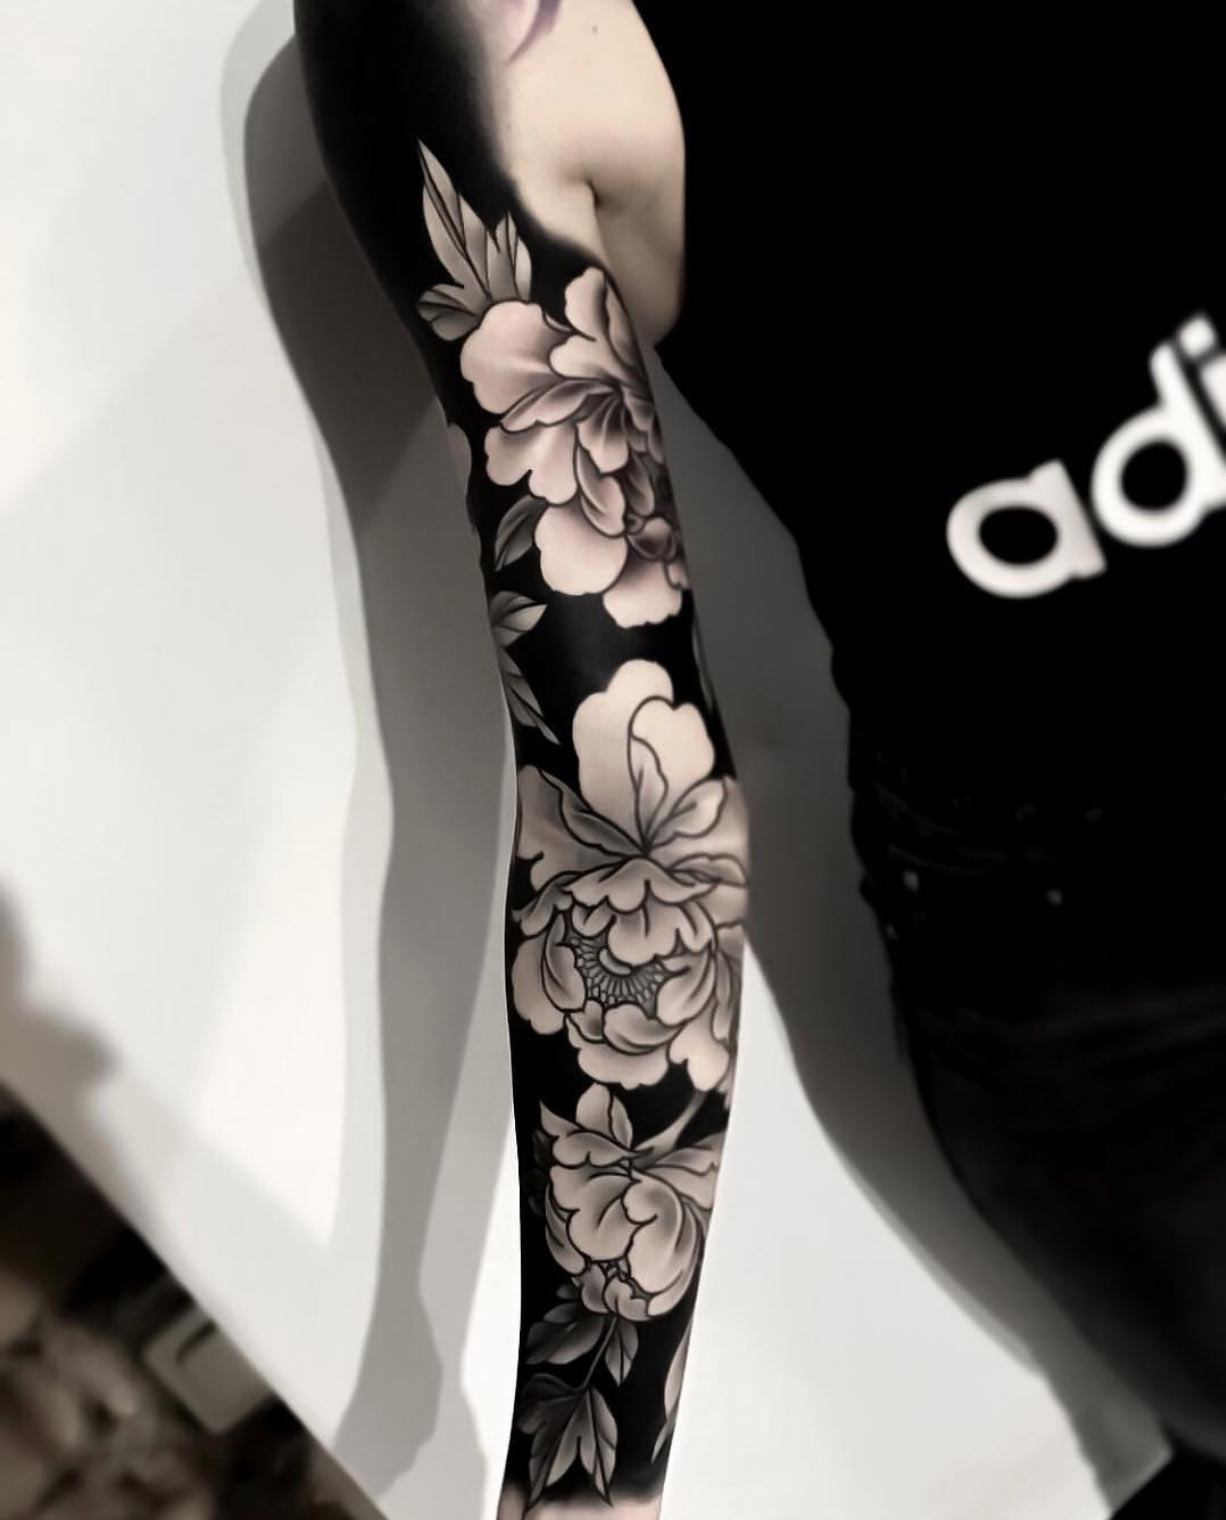 40 Stunning Full Sleeves for Men (2019) - TattooBlend